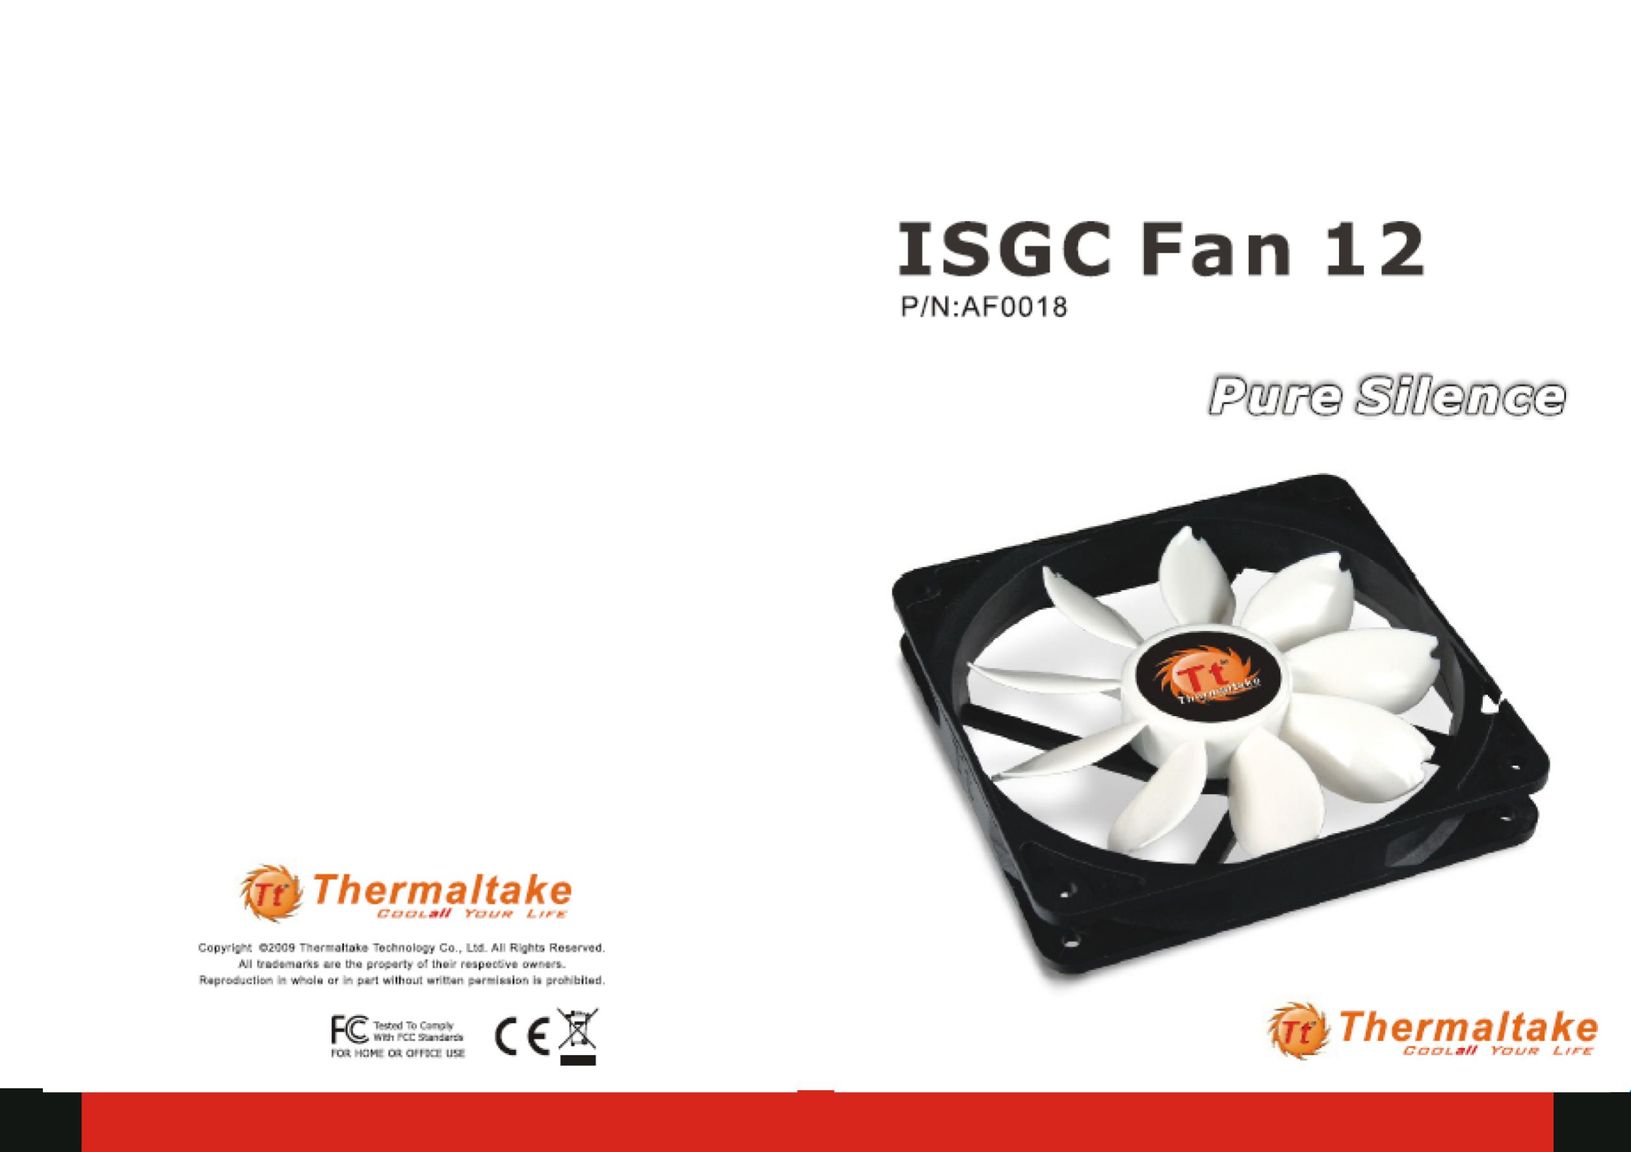 Thermaltake ISGC Fan 12 Computer Hardware User Manual